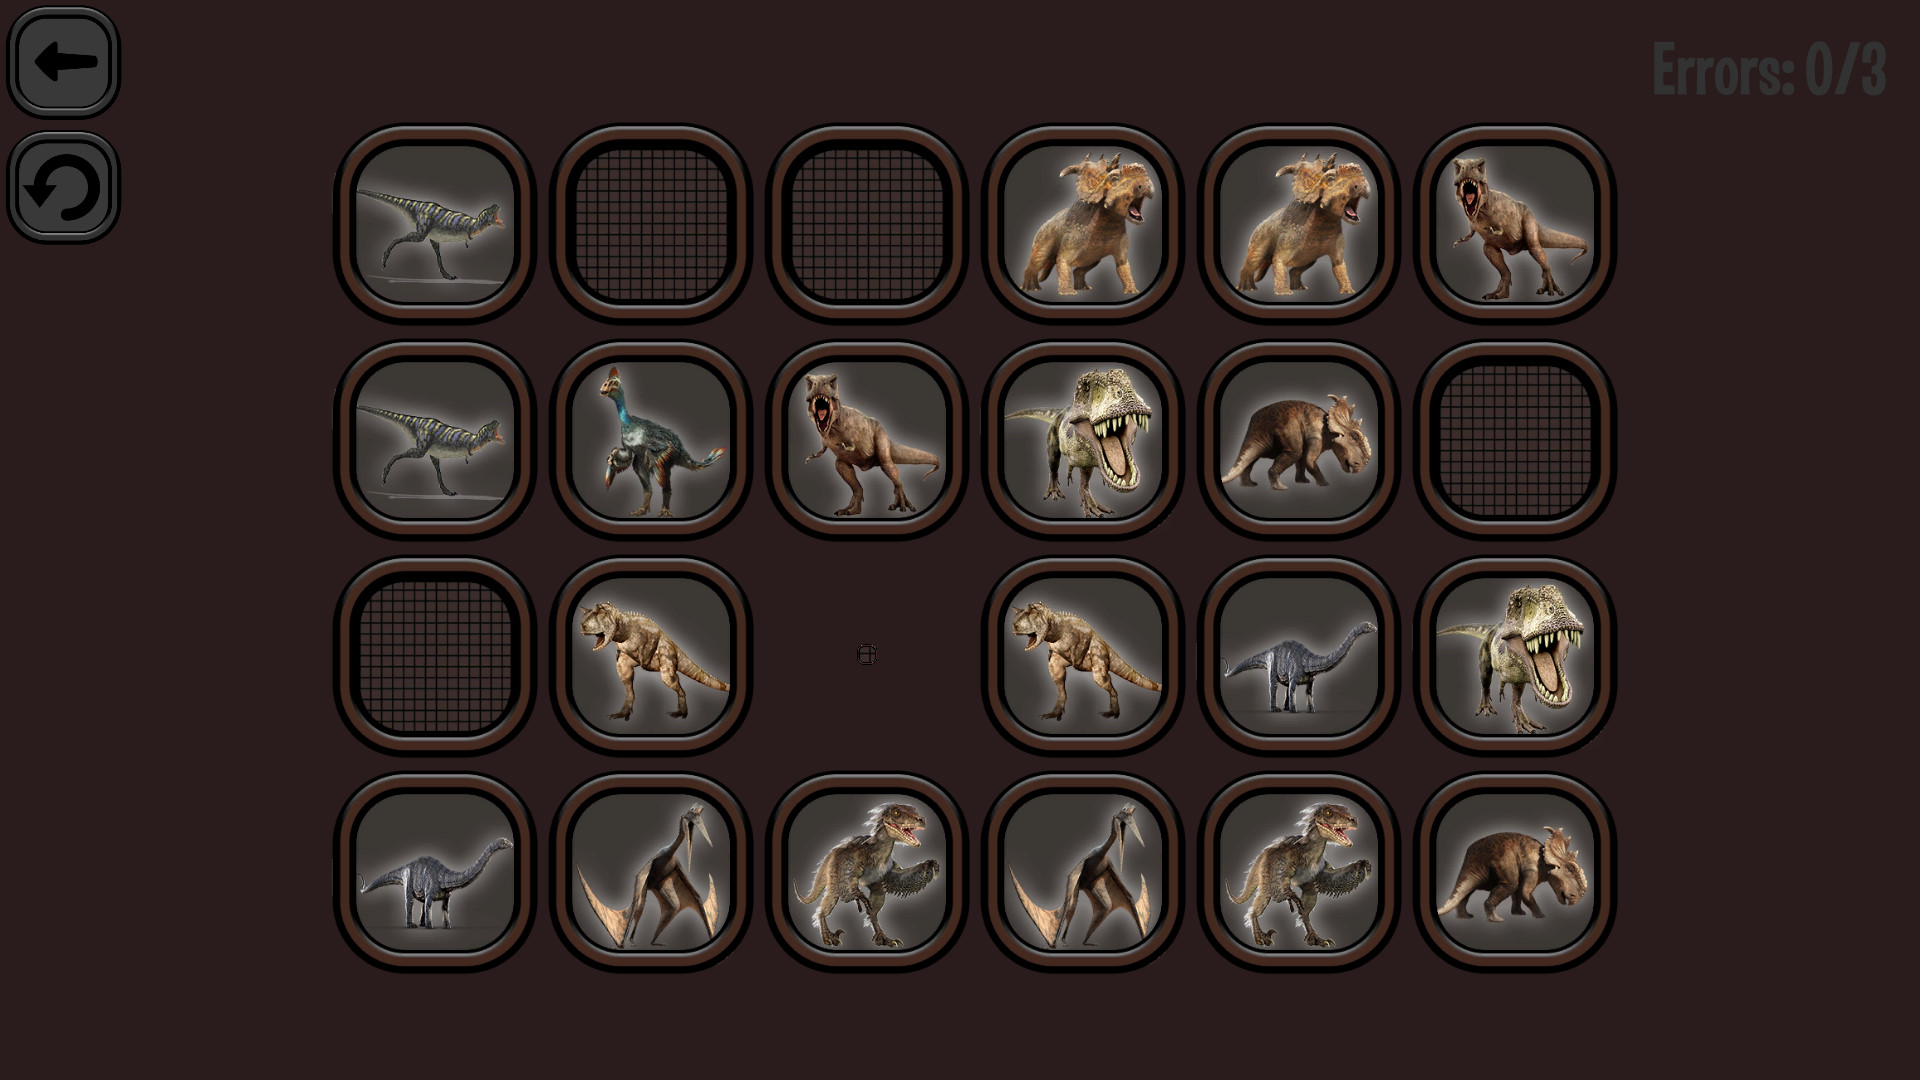 Animals Memory: Dinosaurs screenshot